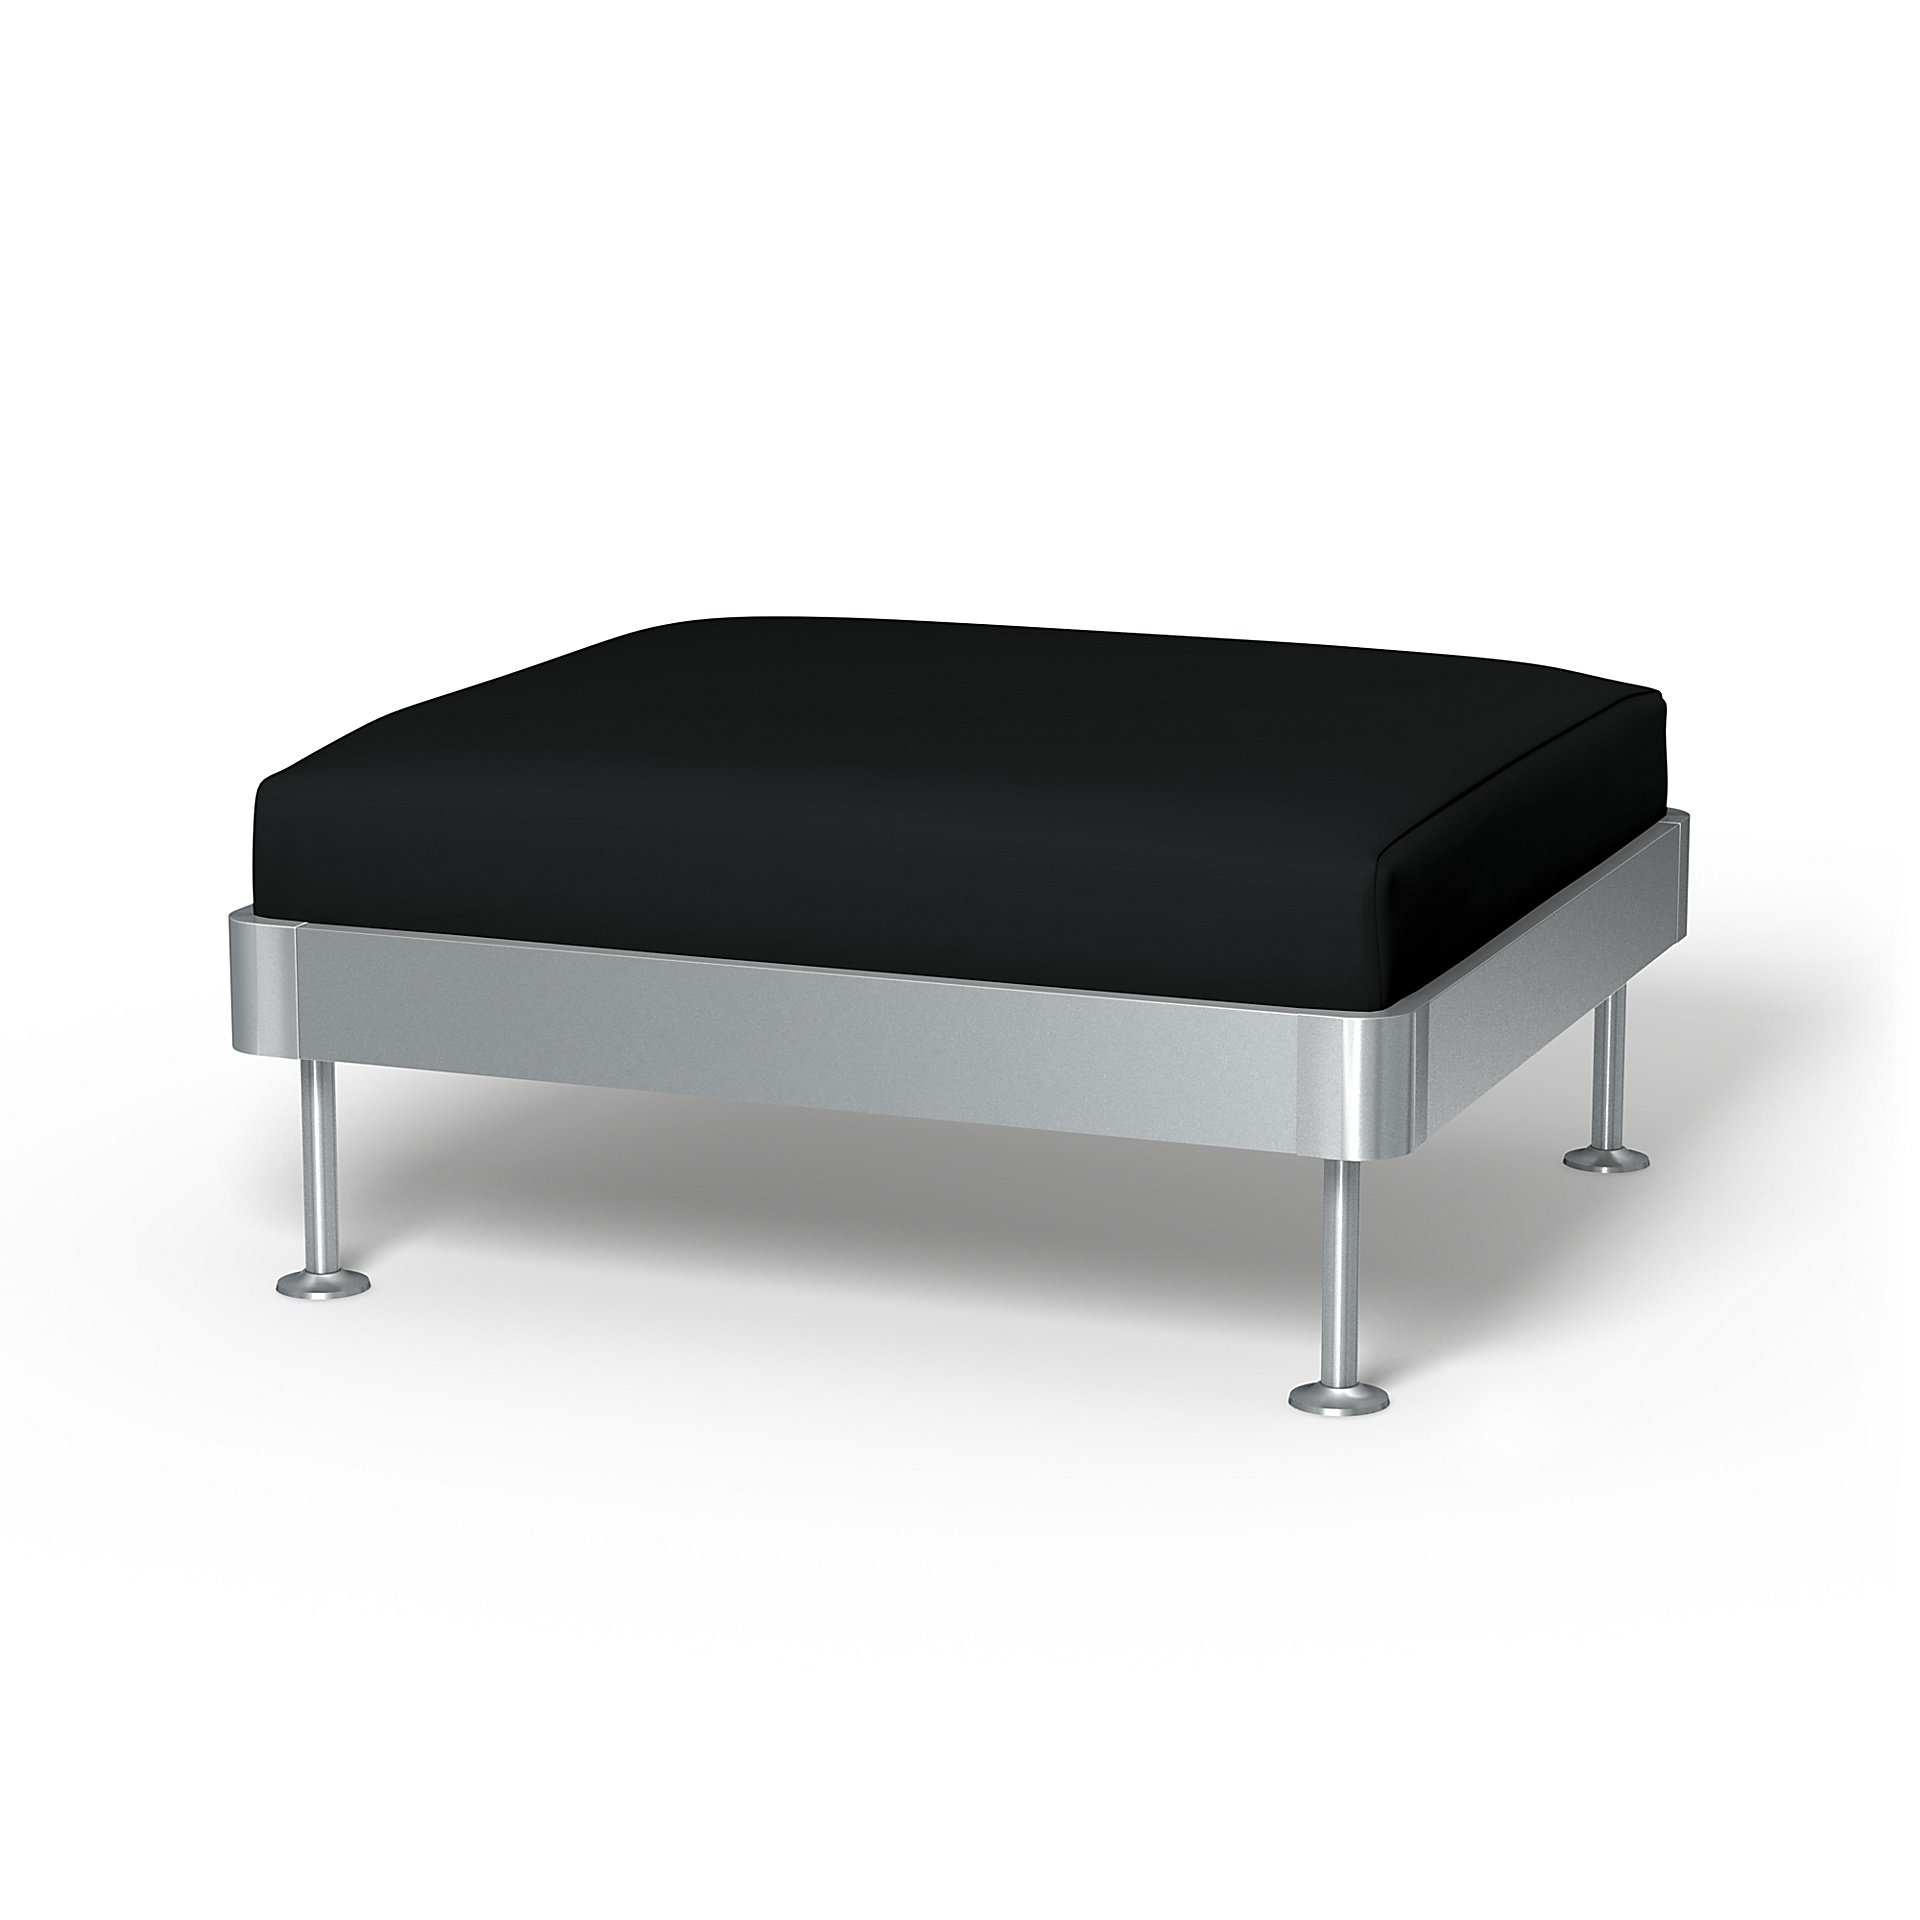 IKEA - Delaktig 1 Seat Platform Cover, Jet Black, Cotton - Bemz